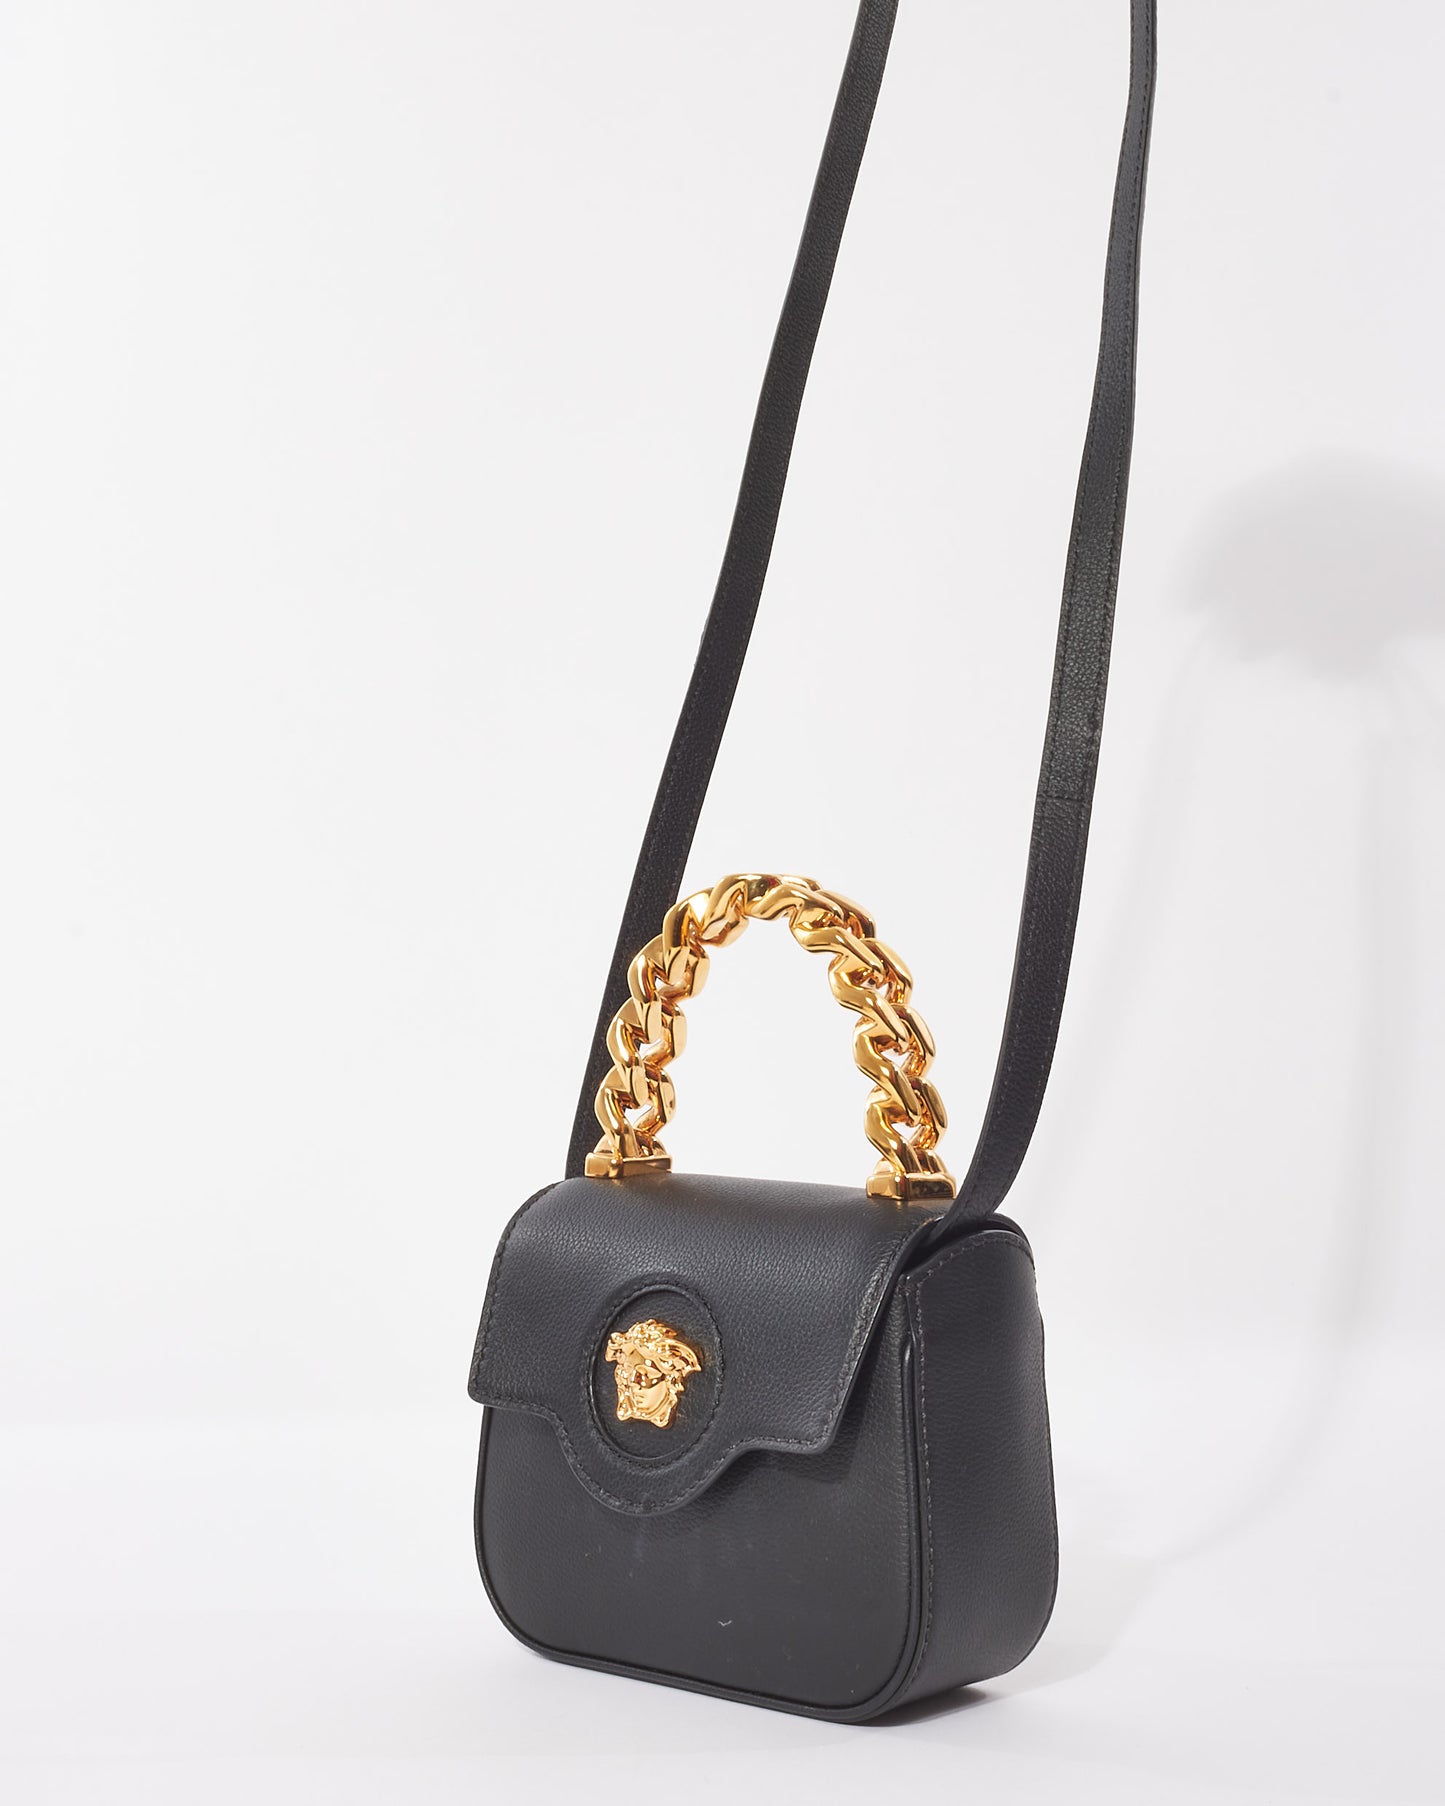 Versace Black Leather "La Medusa" Mini Bag